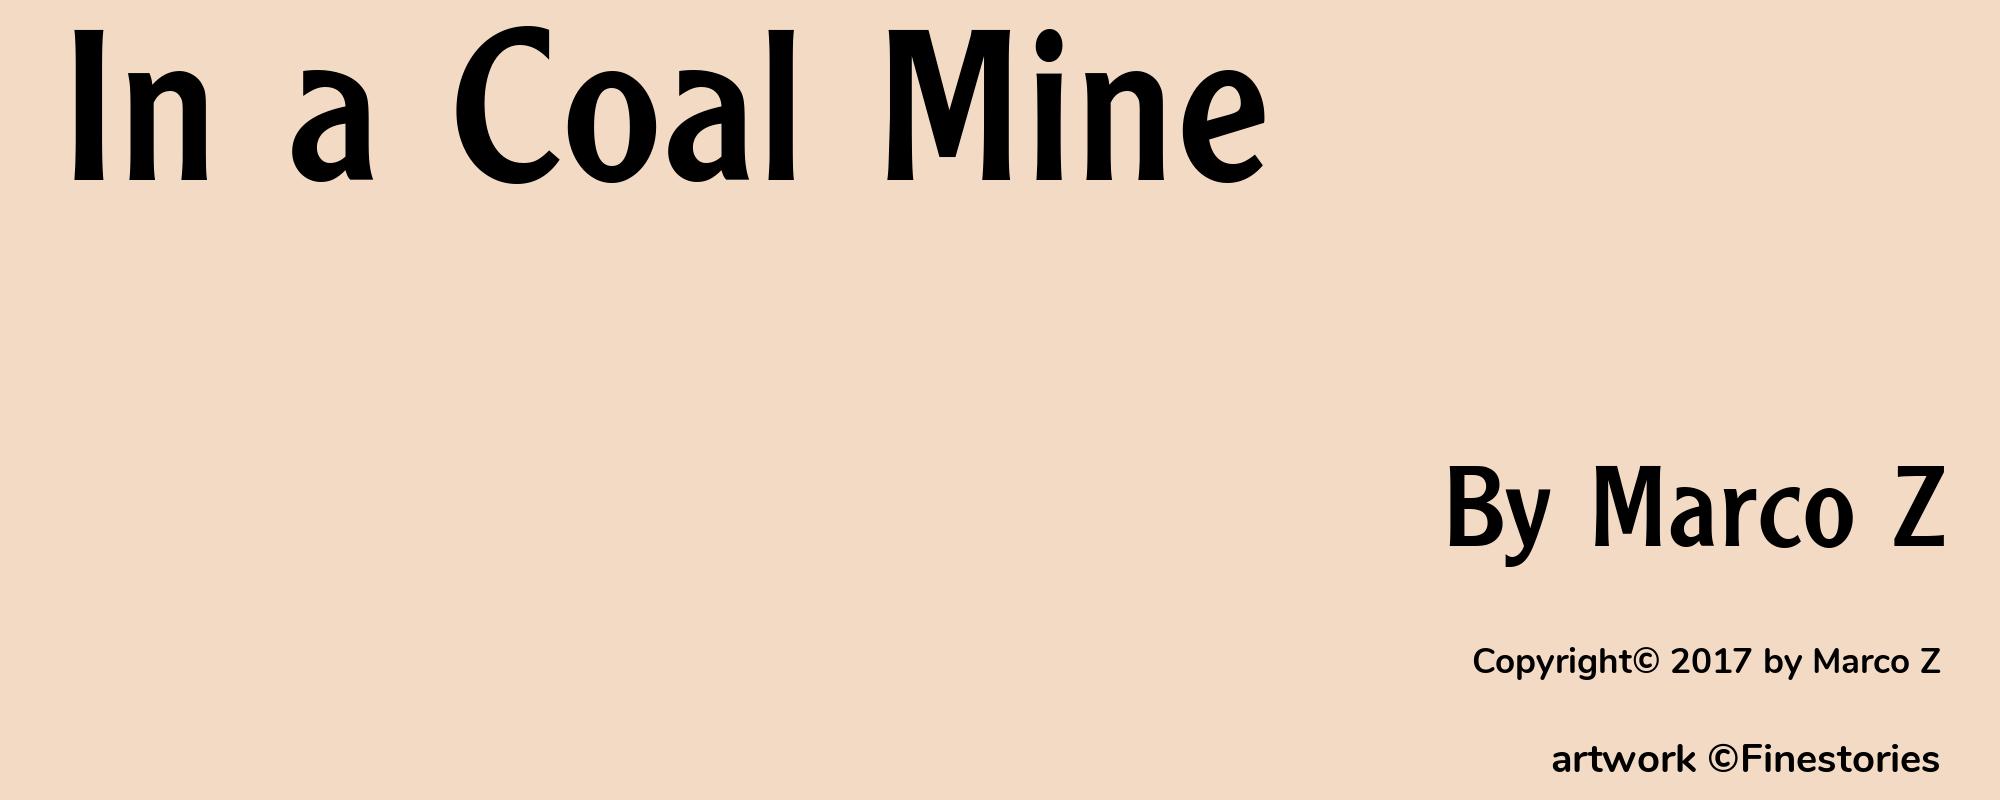 In a Coal Mine - Cover